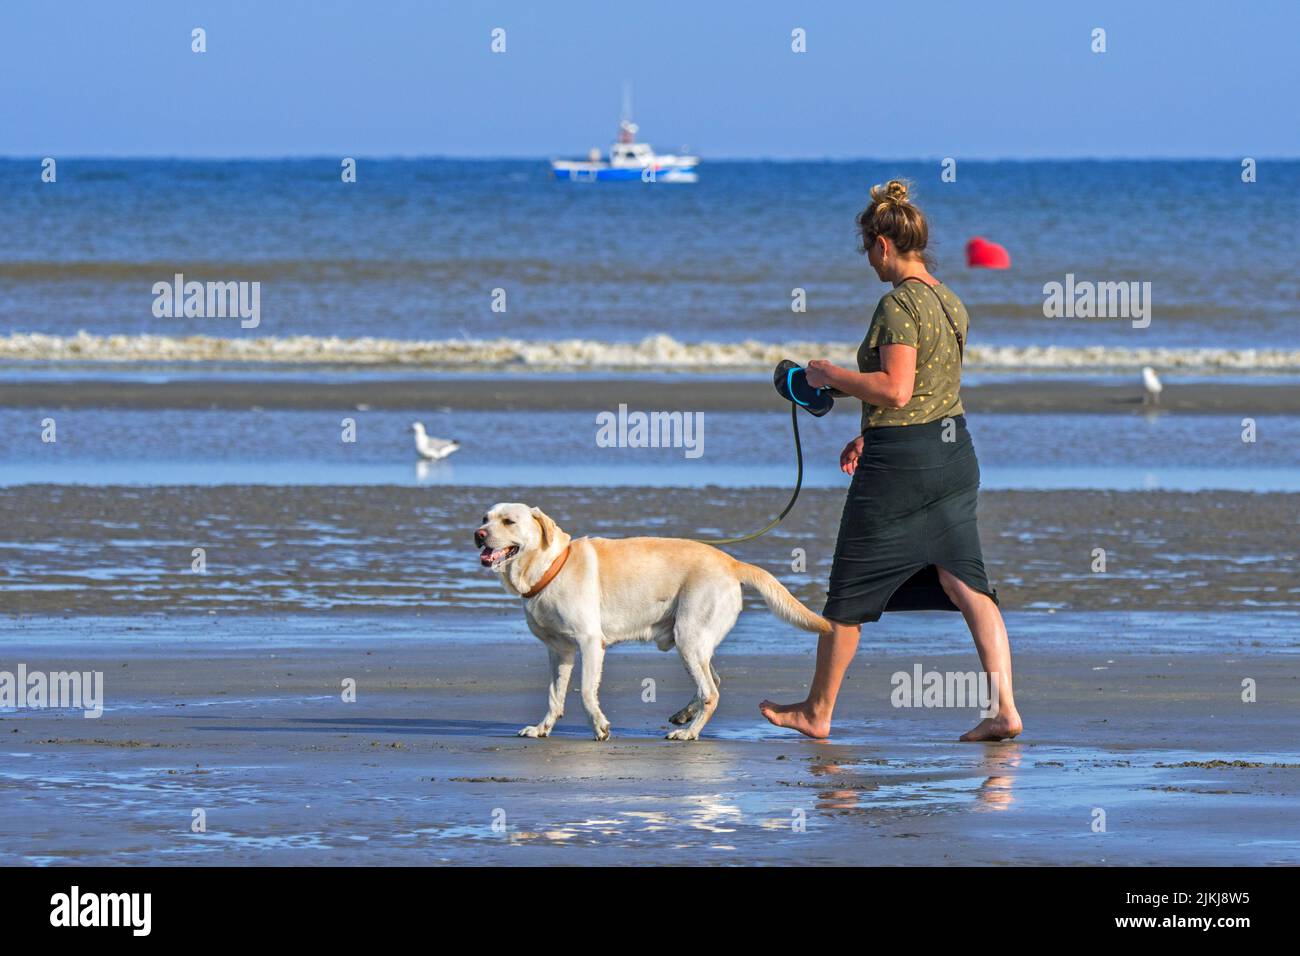 Dueña de perro / mujer caminando descalzo con Labrador Retriever en una correa / plomo en la playa de arena a lo largo de la costa del Mar del Norte en verano Foto de stock